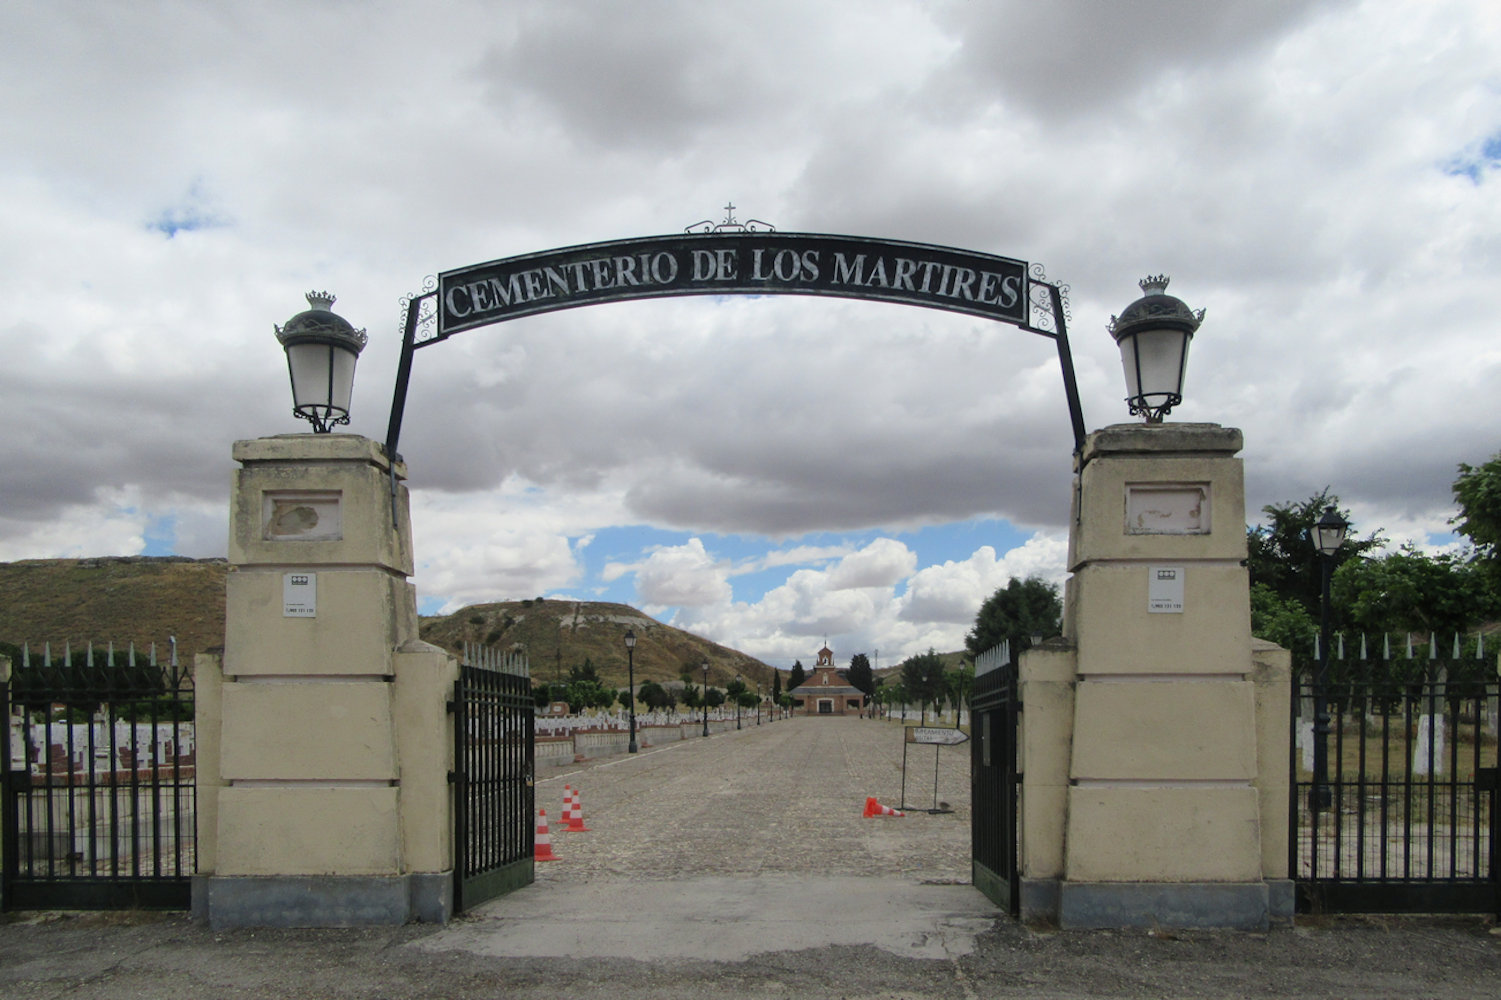 Eingang zum Märtyrerfriedhof Paracuellos del Jamara